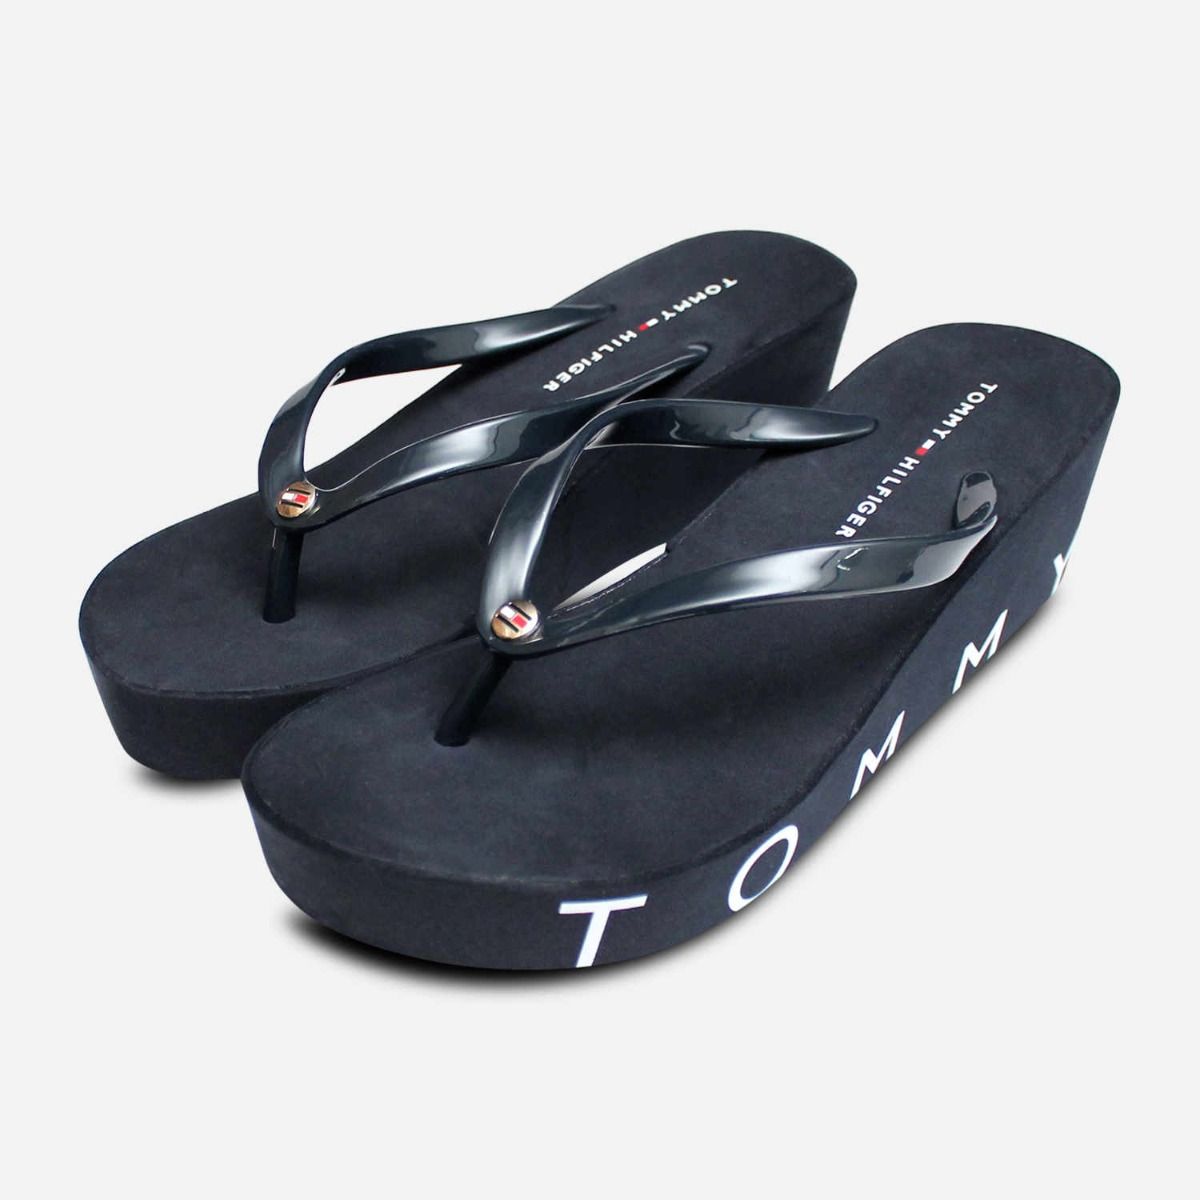 tommy hilfiger wedge beach sandals